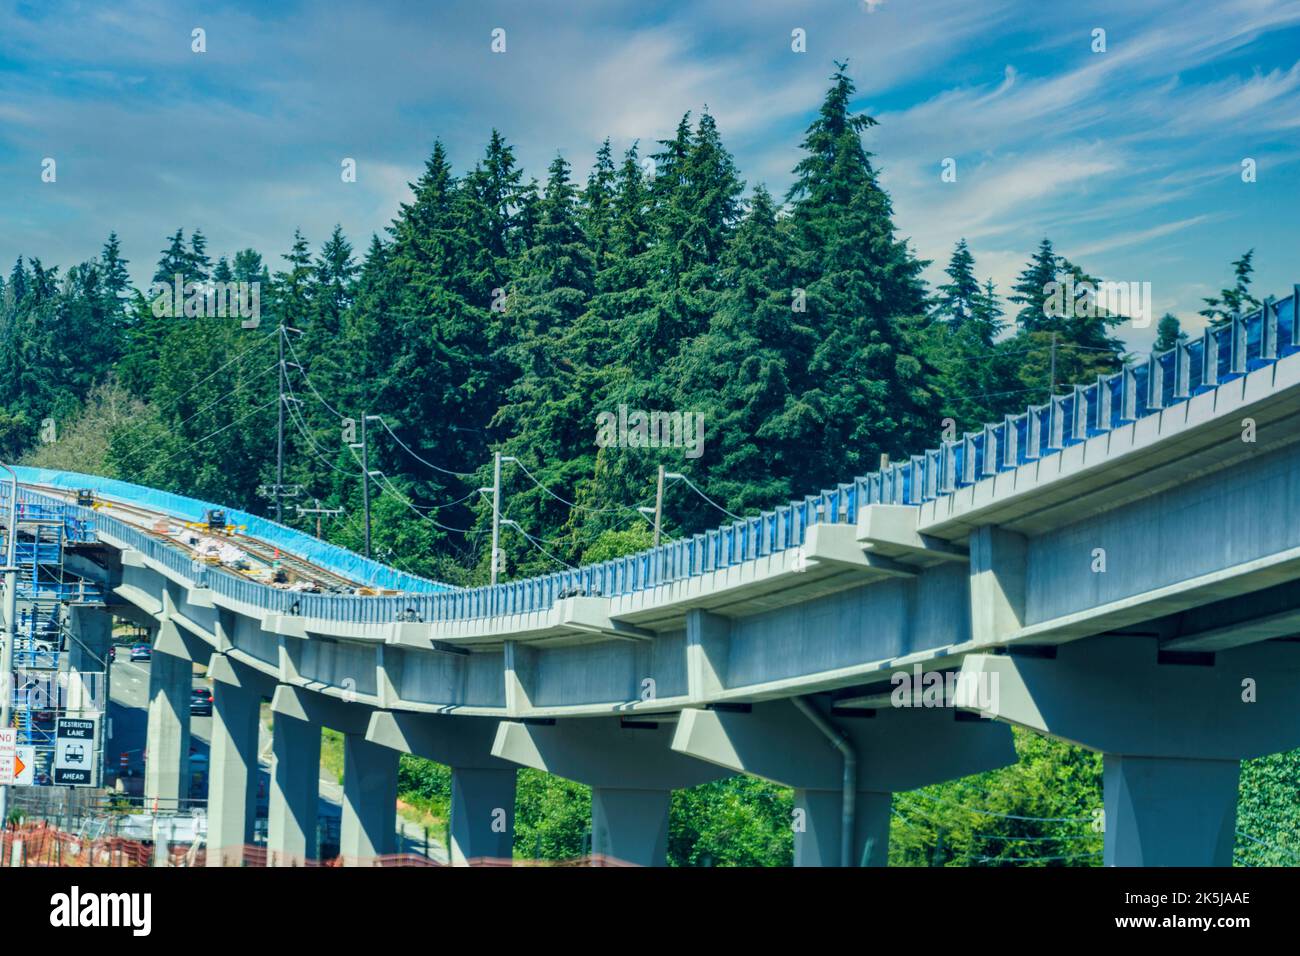 Le système de transport de masse Light Rail est en construction alors qu'il s'étendait dans la banlieue de Seattle, Washington. Banque D'Images